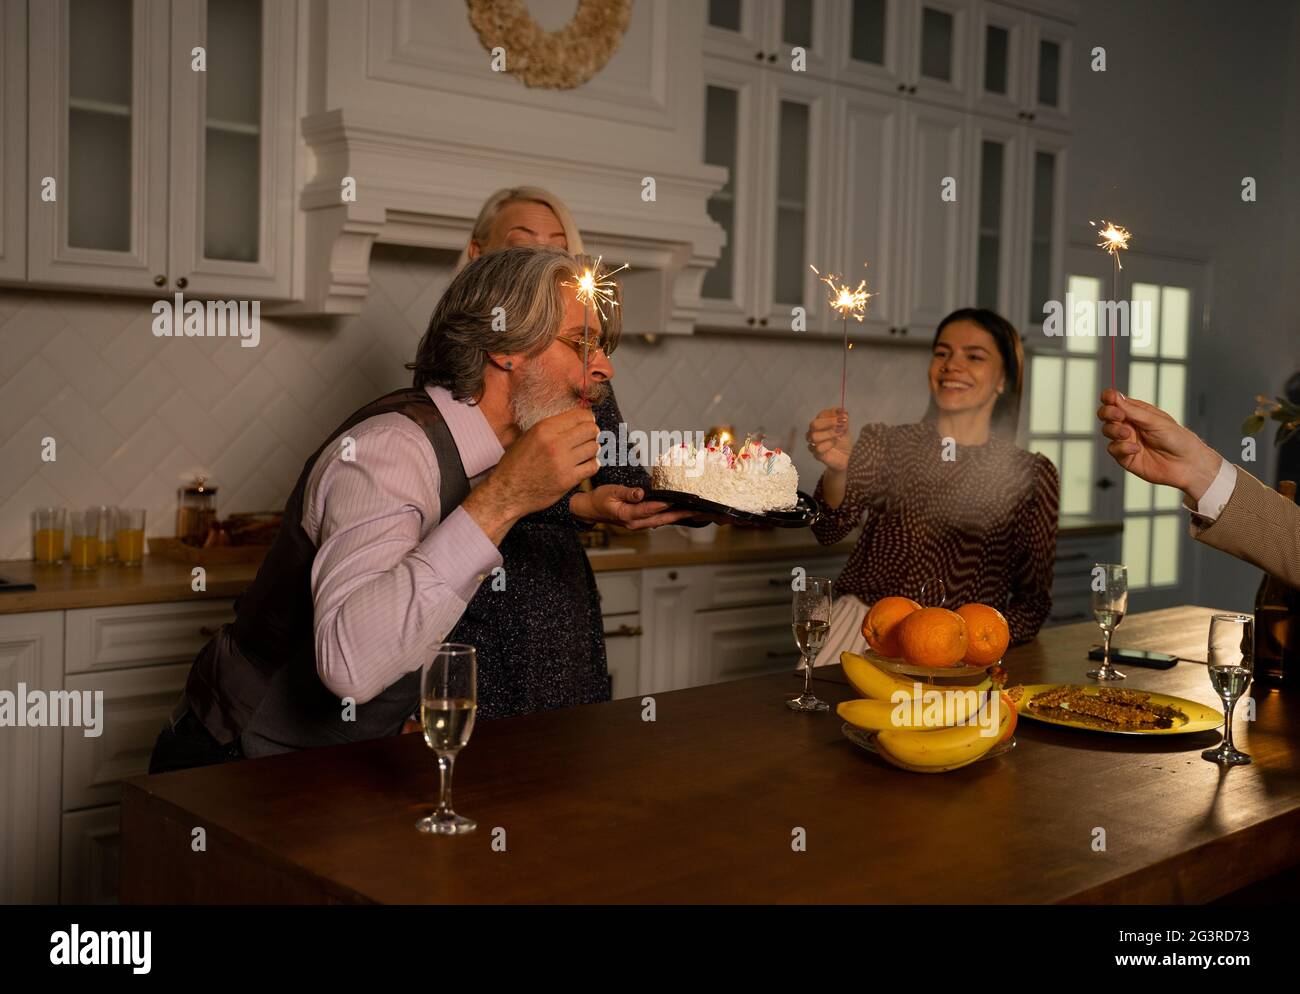 Großvater bläst Kerzen auf Geburtstagstorte aus und wünscht sich, während er zu Hause hinter dem Küchentisch sitzt, seine Frau Kuchen hält und Gäste Wunderkerzen hält. Konzept für Familienfeiern Stockfoto